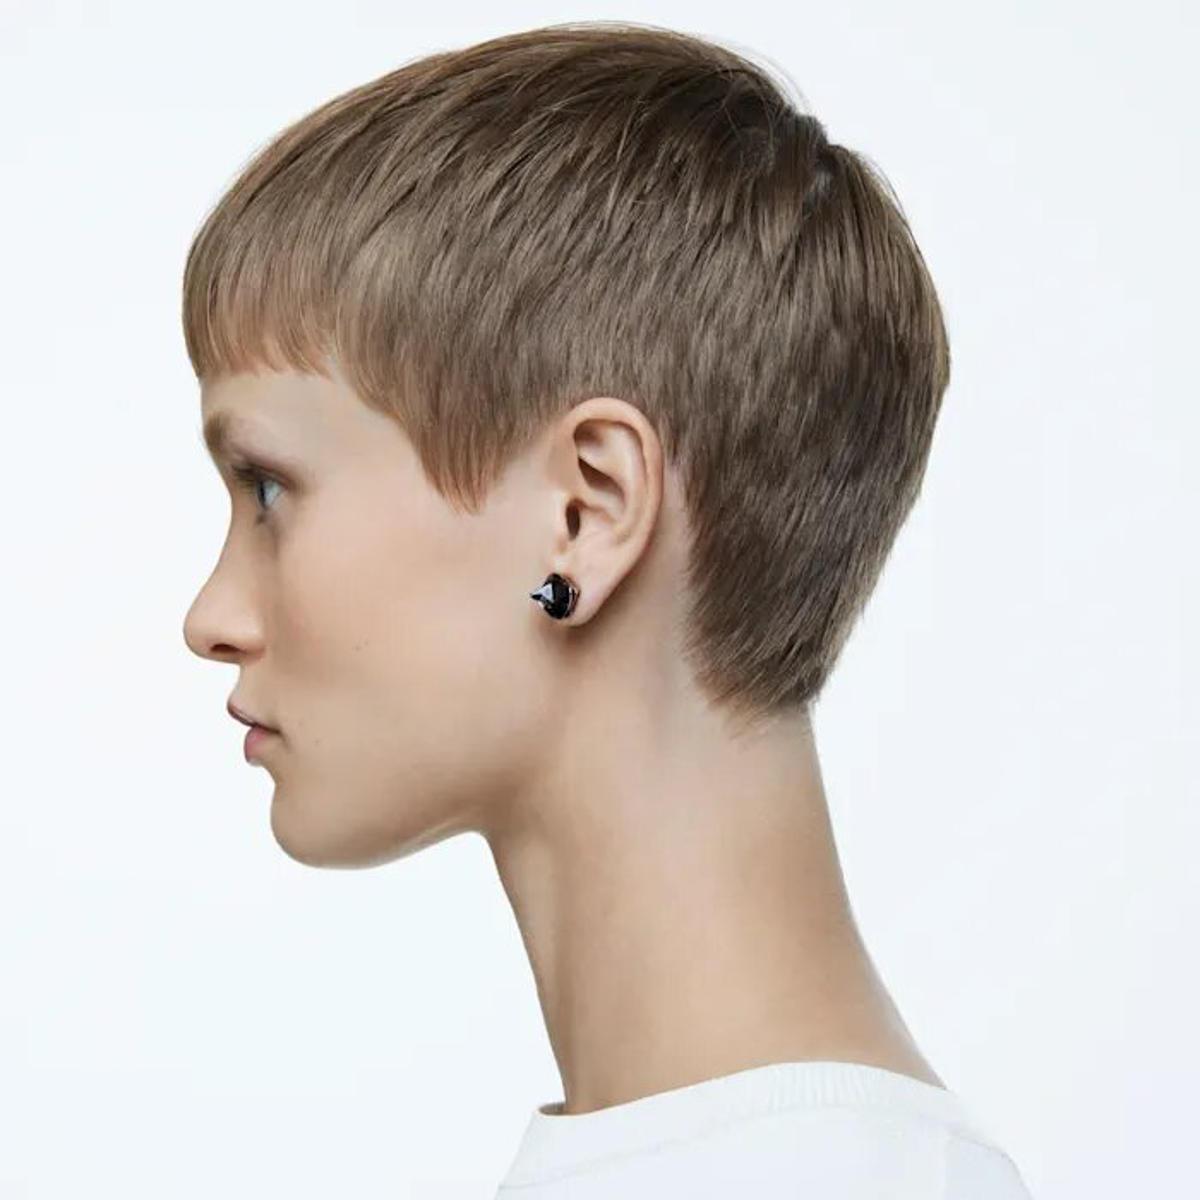 SWAROVSKI EARRINGS FOR WOMEN CHROMA 5613723